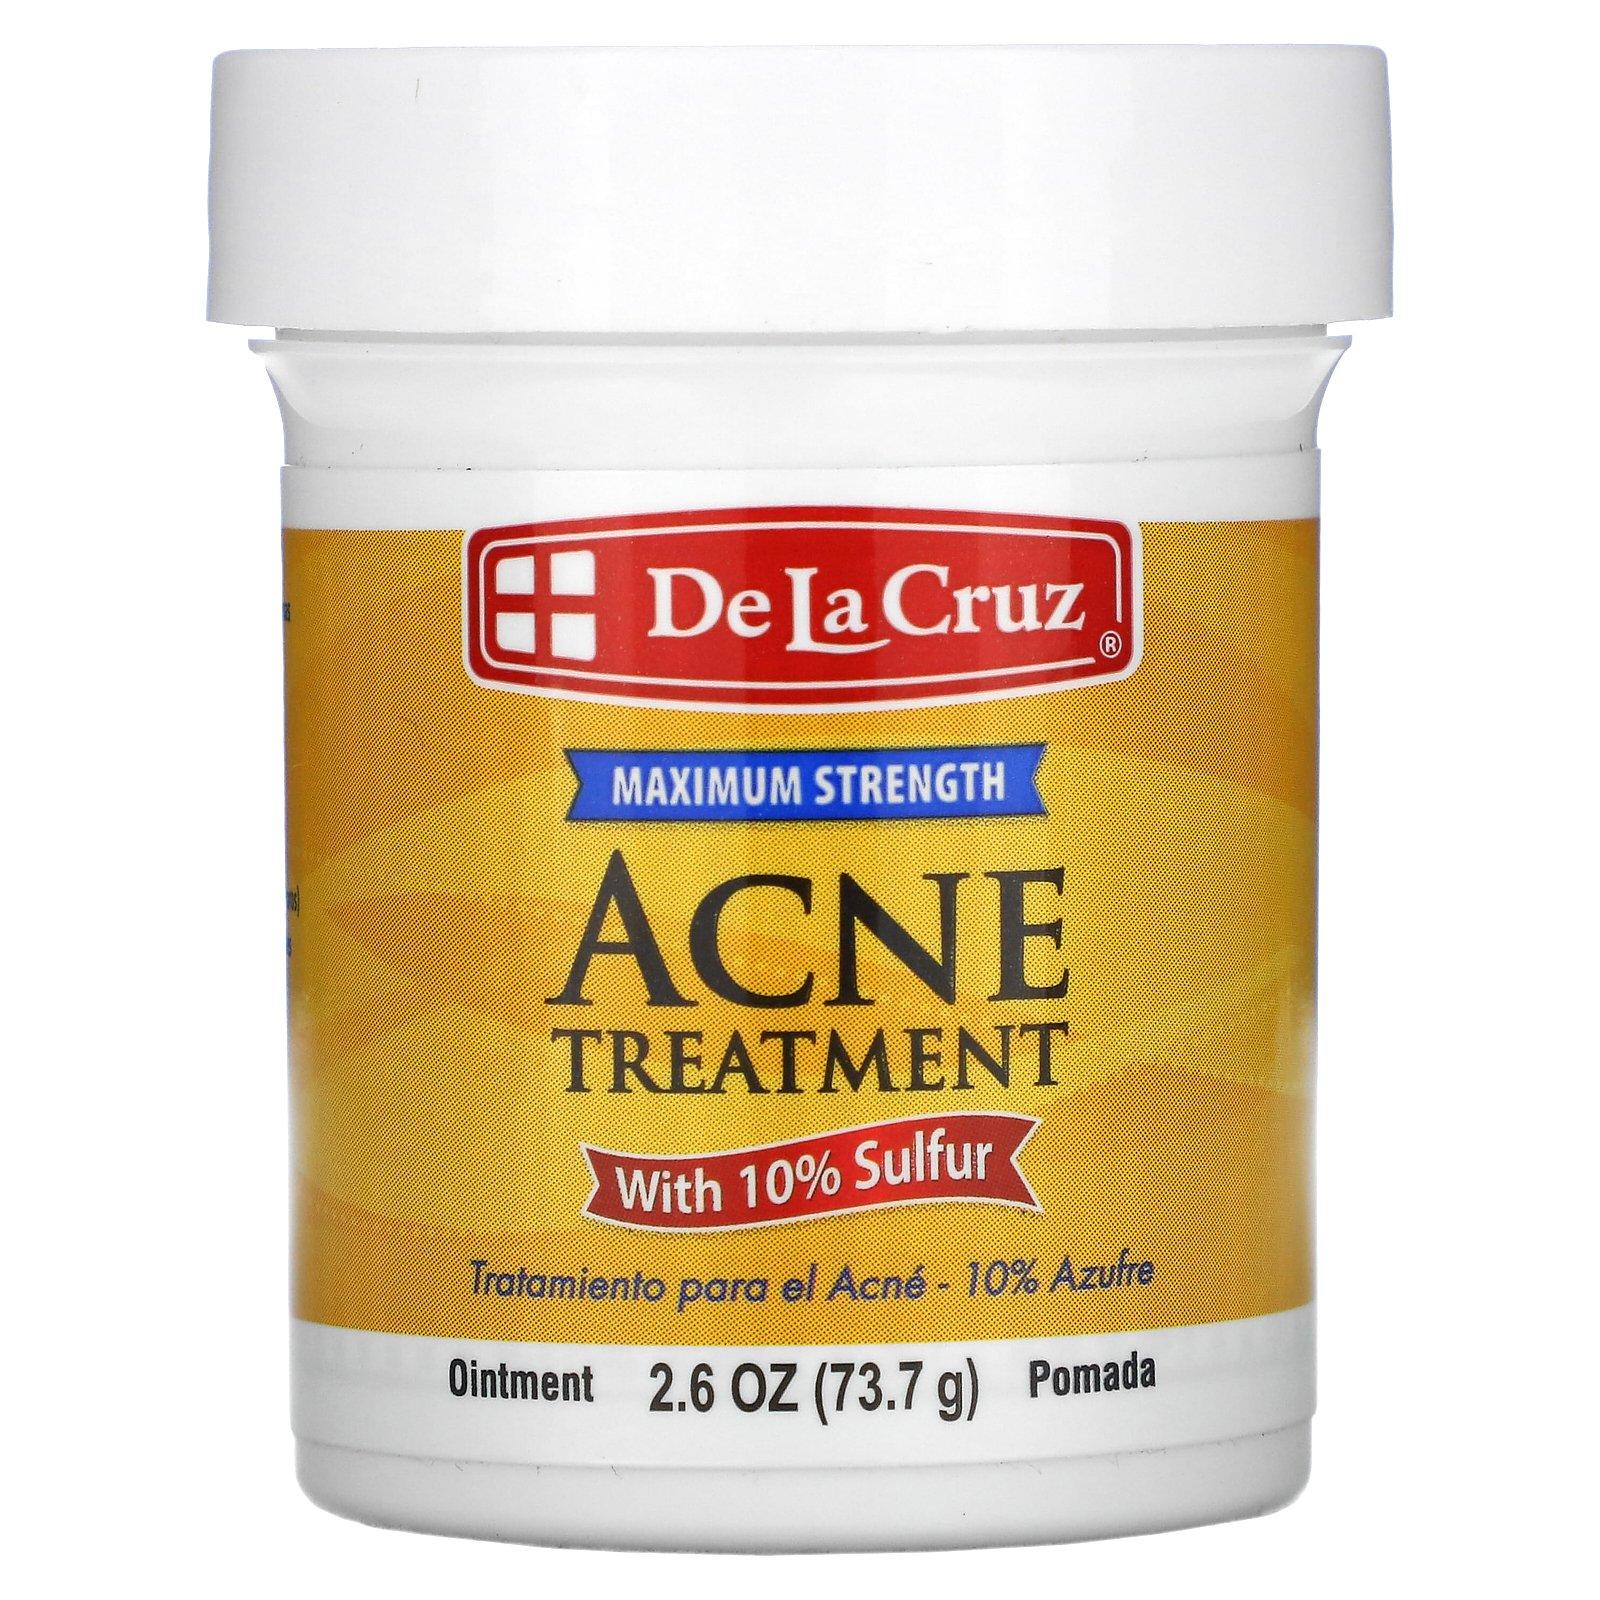 De La Cruz 10% Sulfur Ointment Maximum Strength Acne Treatment 73.7g